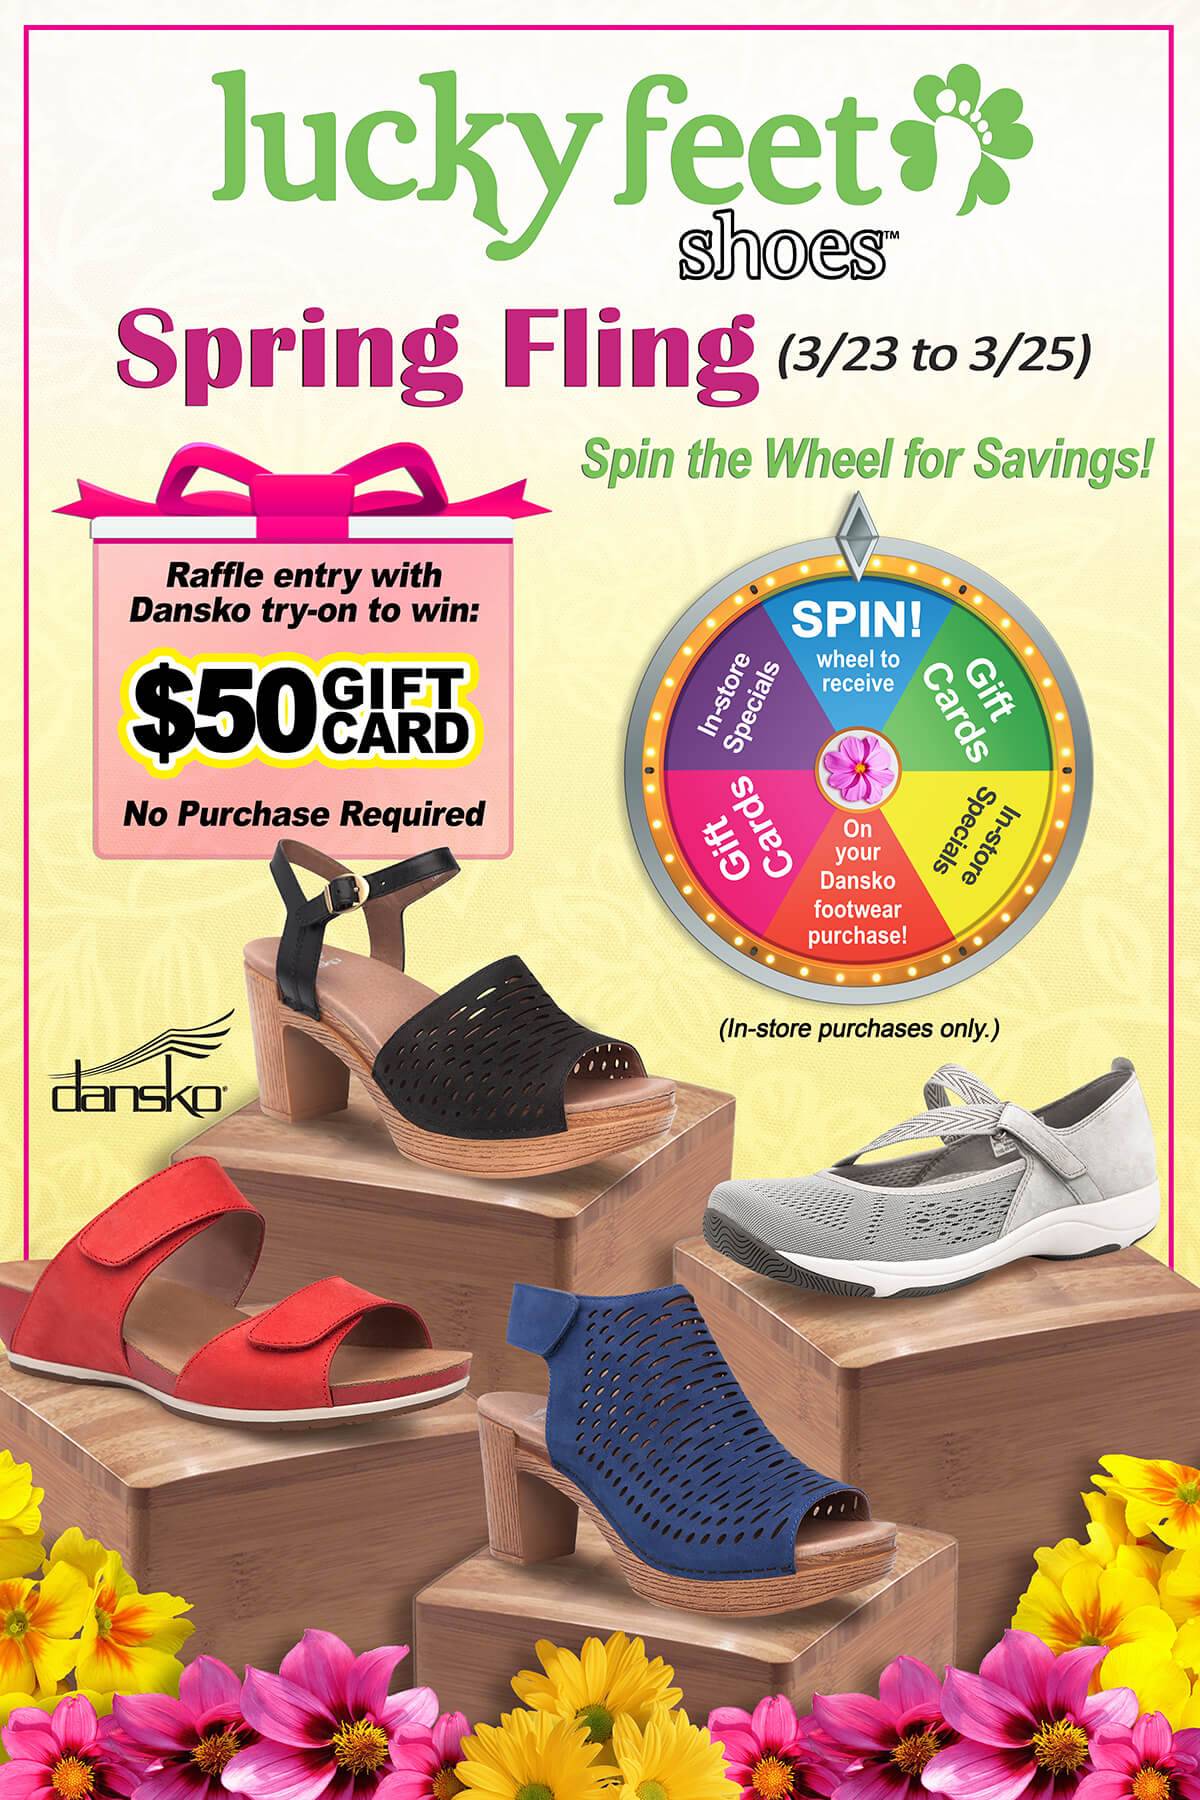 spring fling shoes